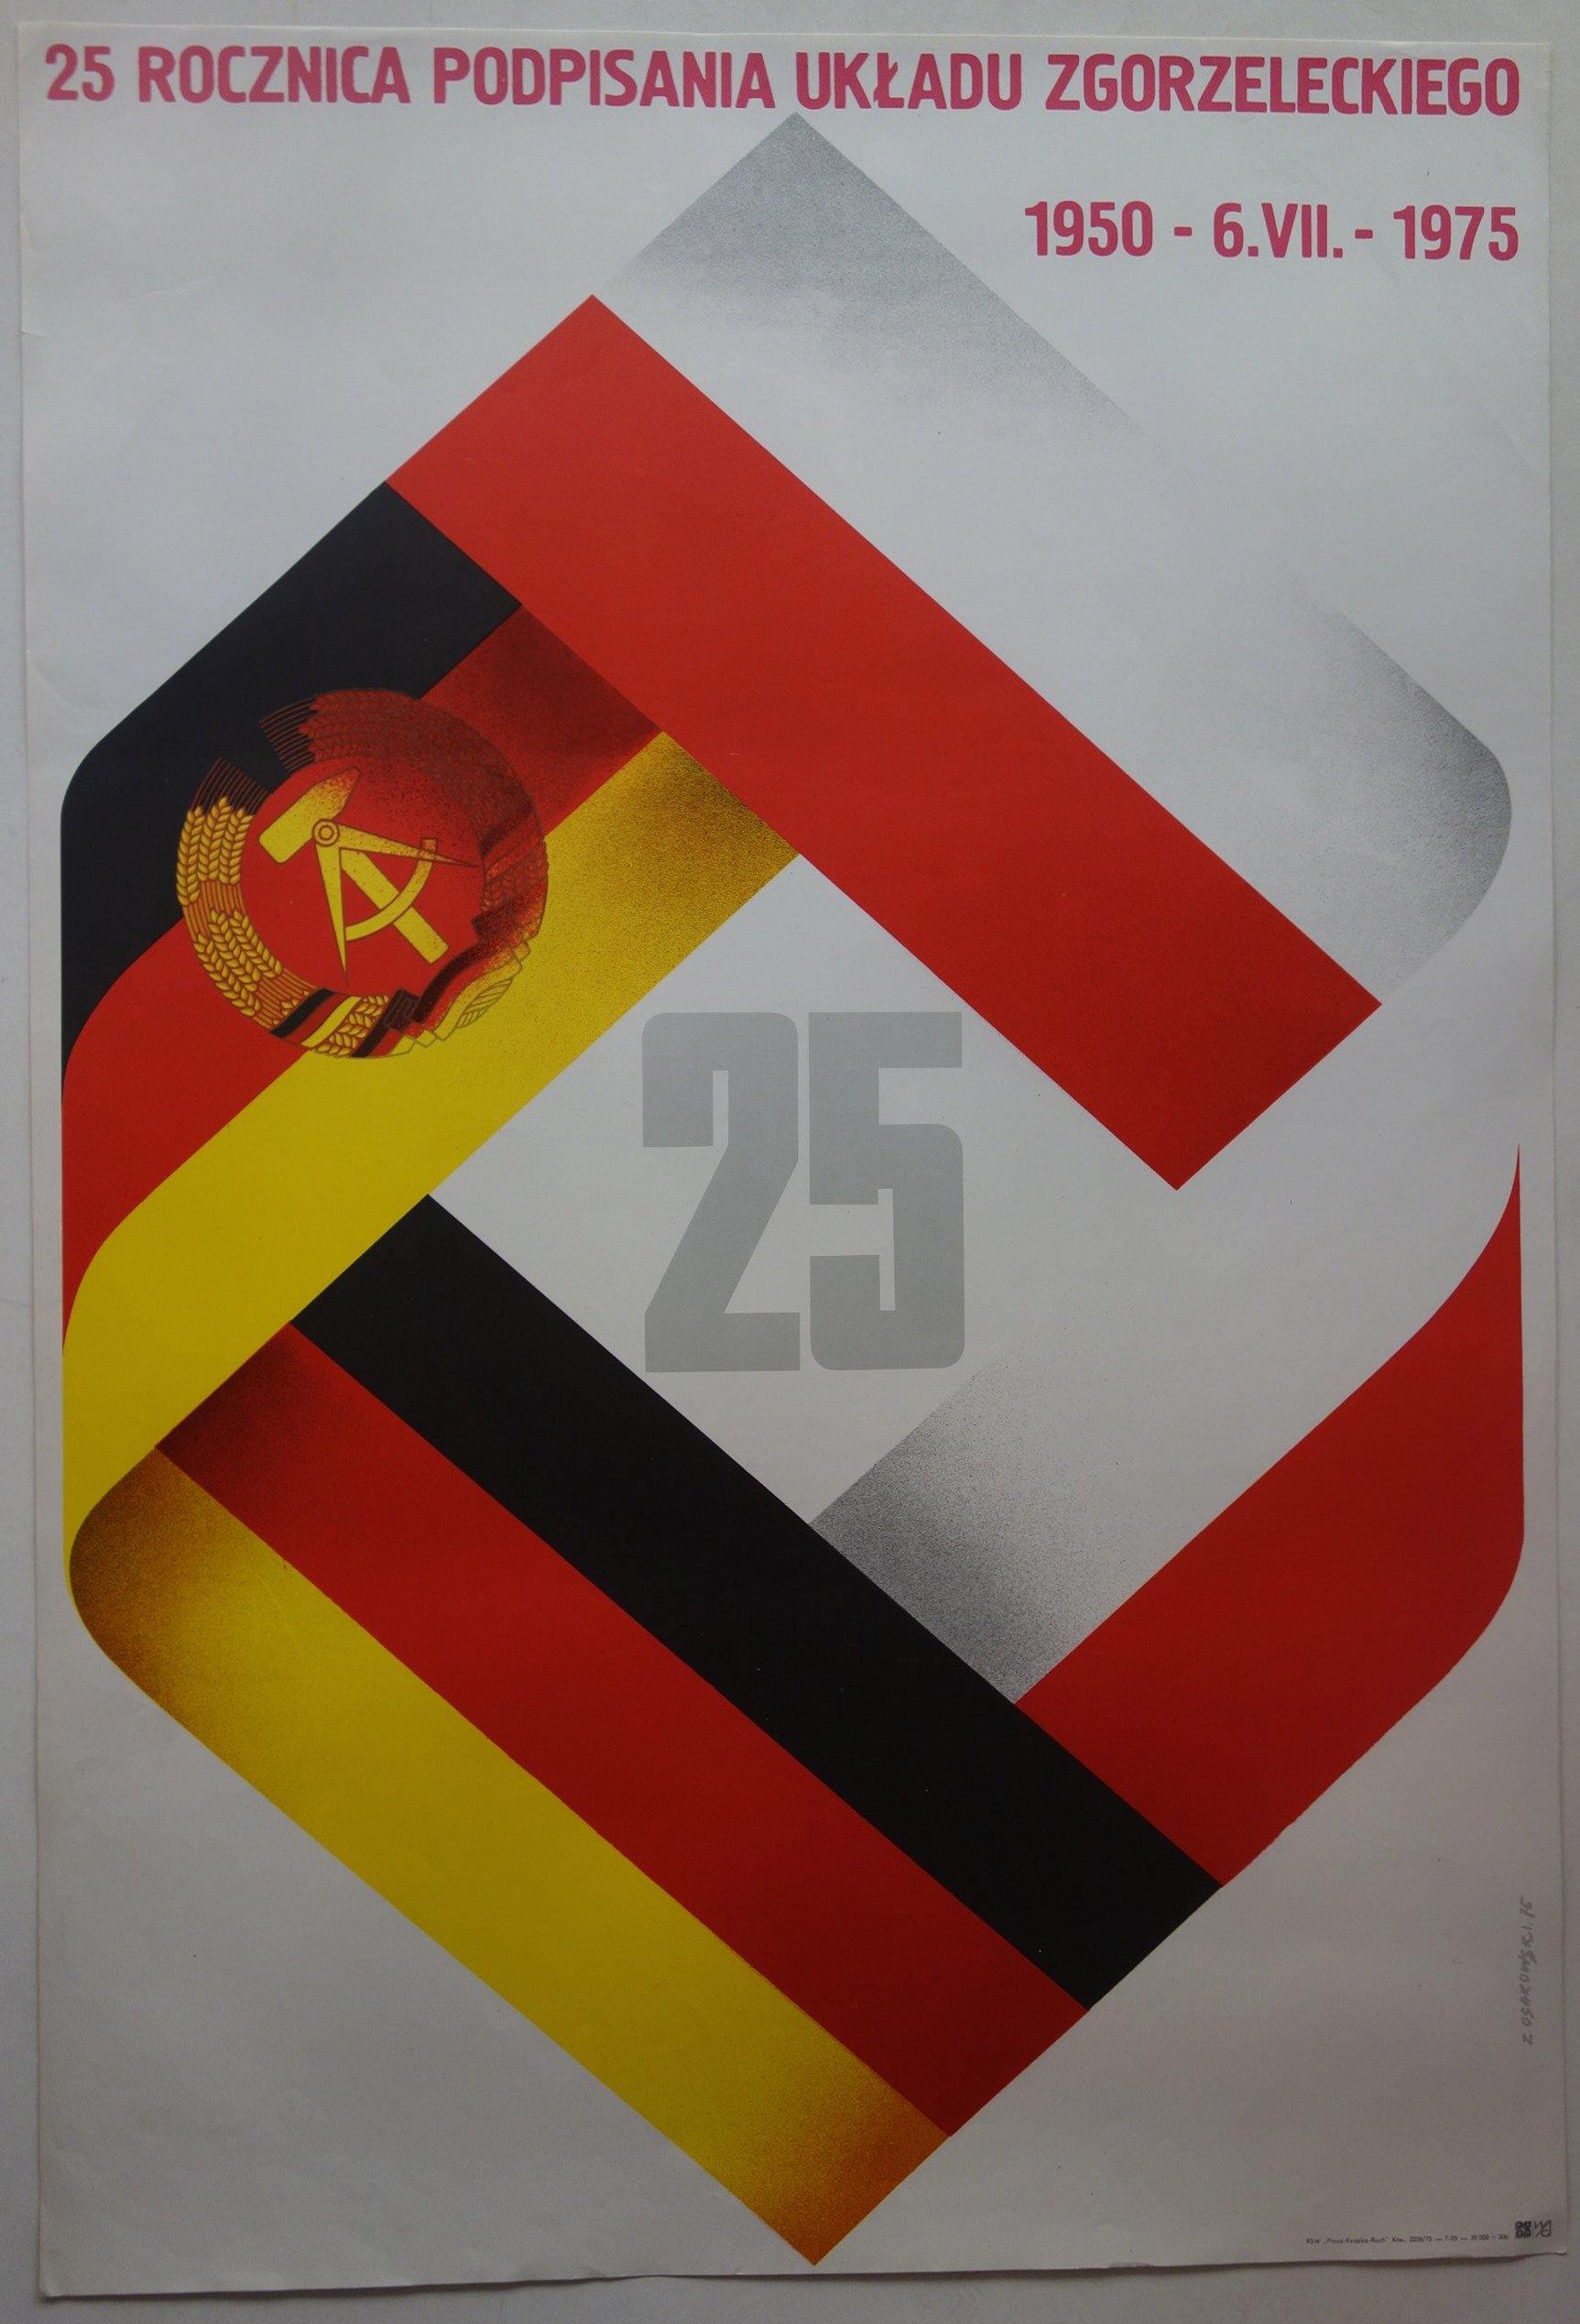 25 Rocznica Podpisania Ukladu Zgorzeleckiego - Poster Museum